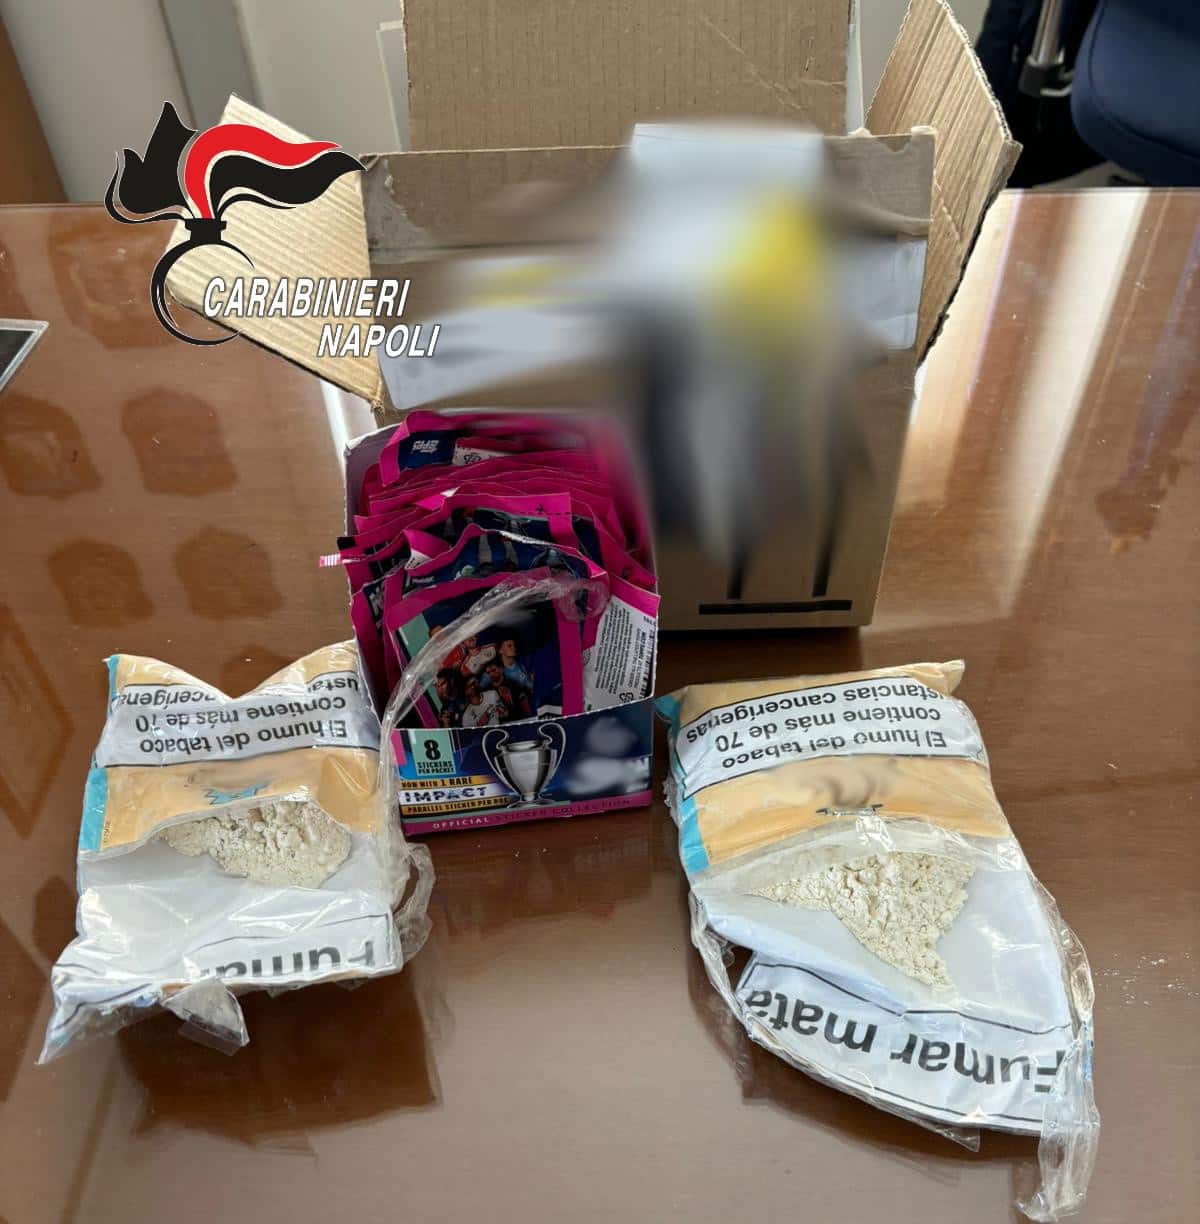 Il contenuto del pacco consegnato ai Carabinieri dal 43enne